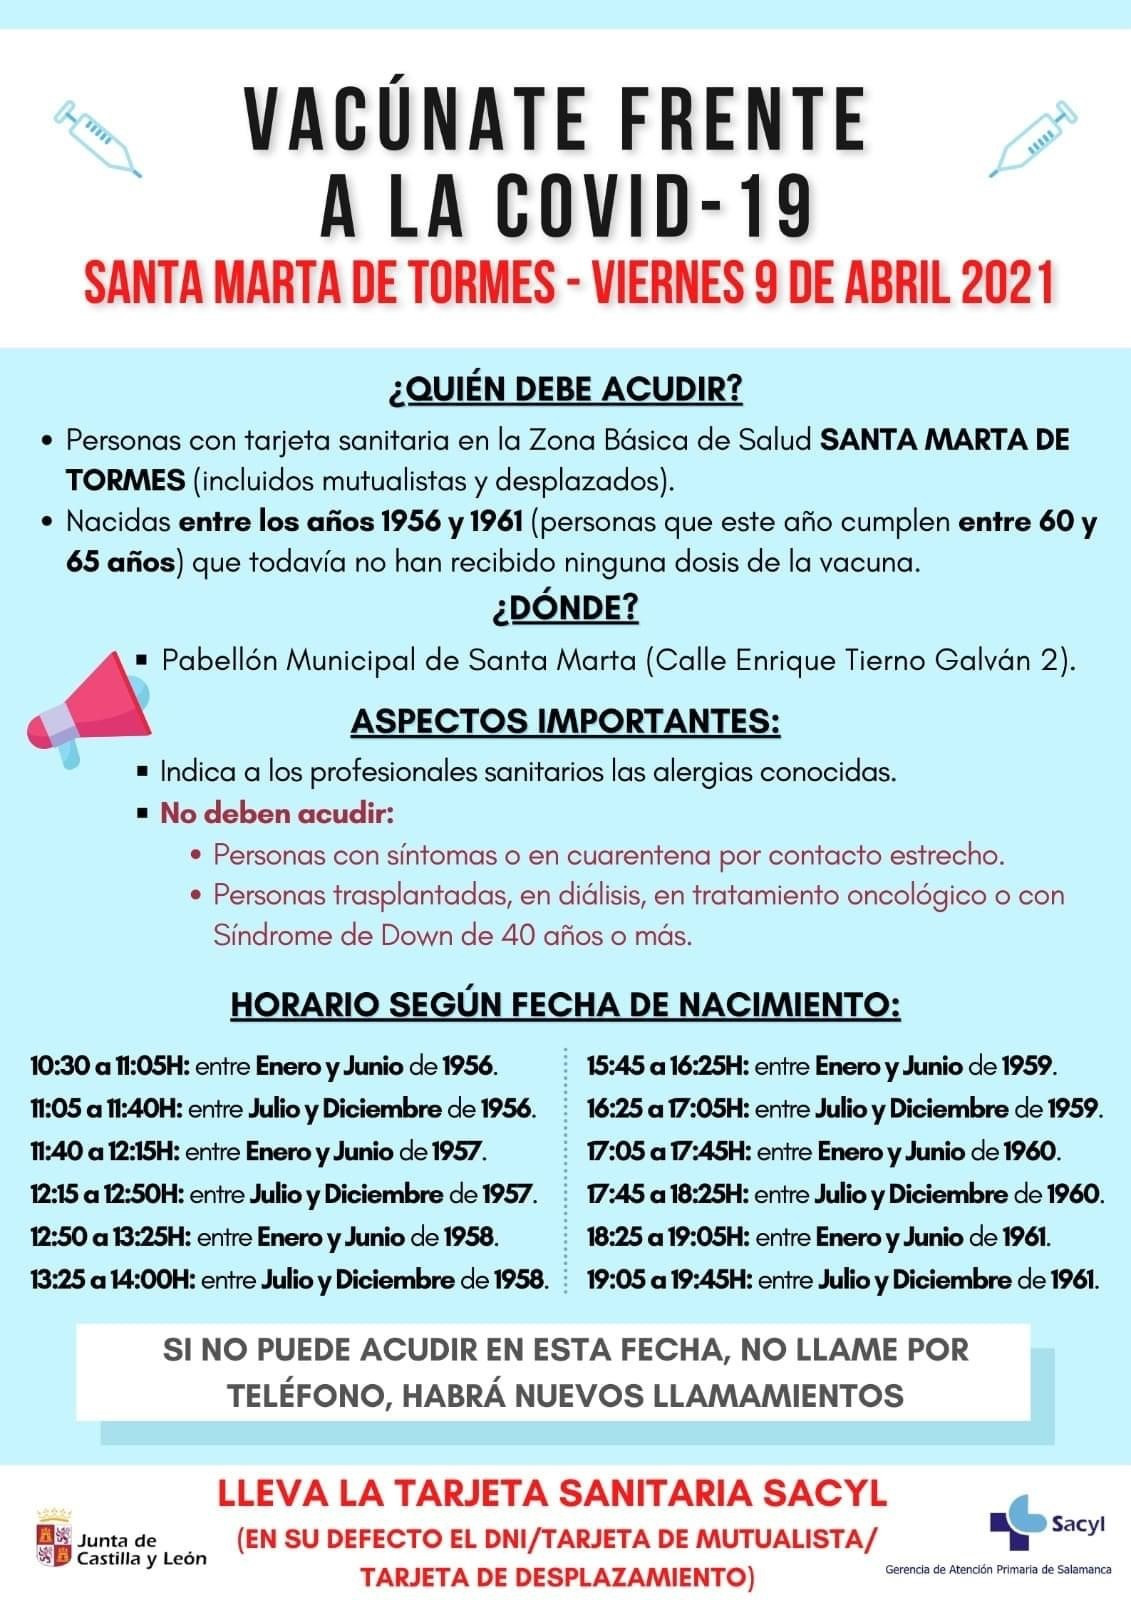 Santa Marta   Cartel vacunaciu00f3n 60 65 au00f1os